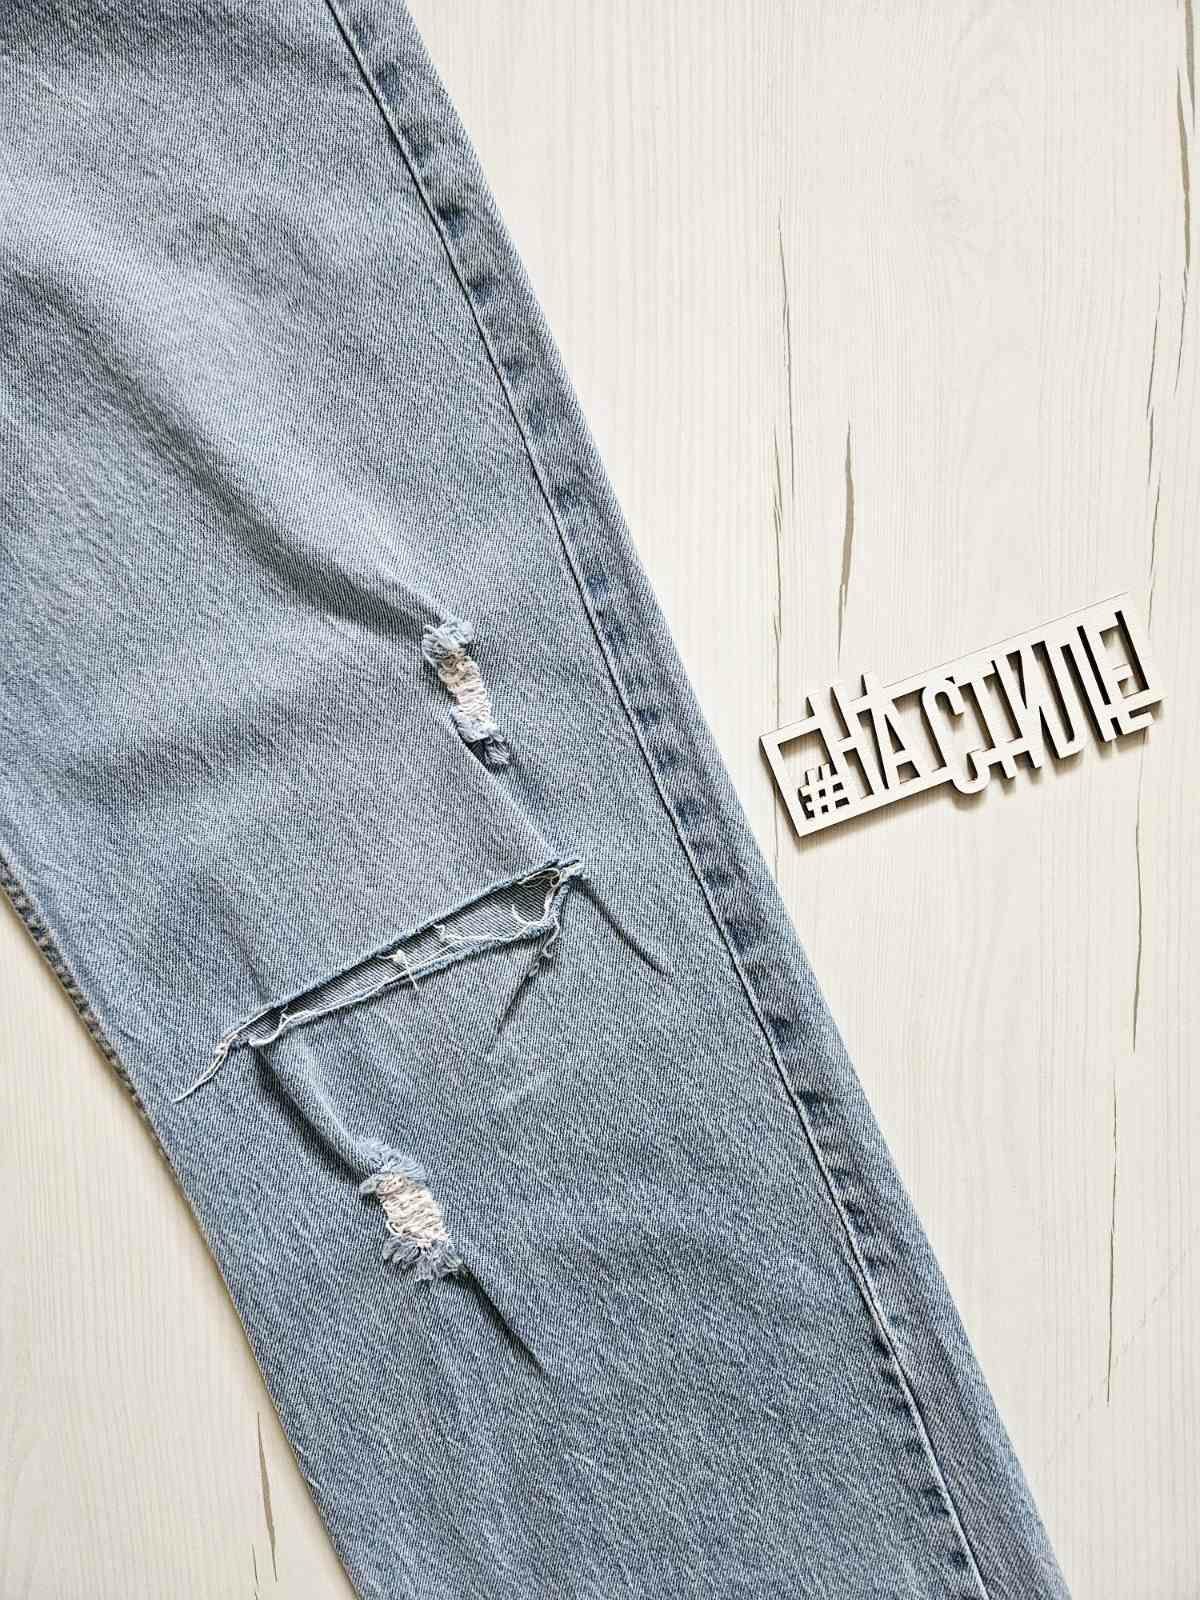 Джинси жіночі широкі, розмір 28, джинси Cracpot Туреччина